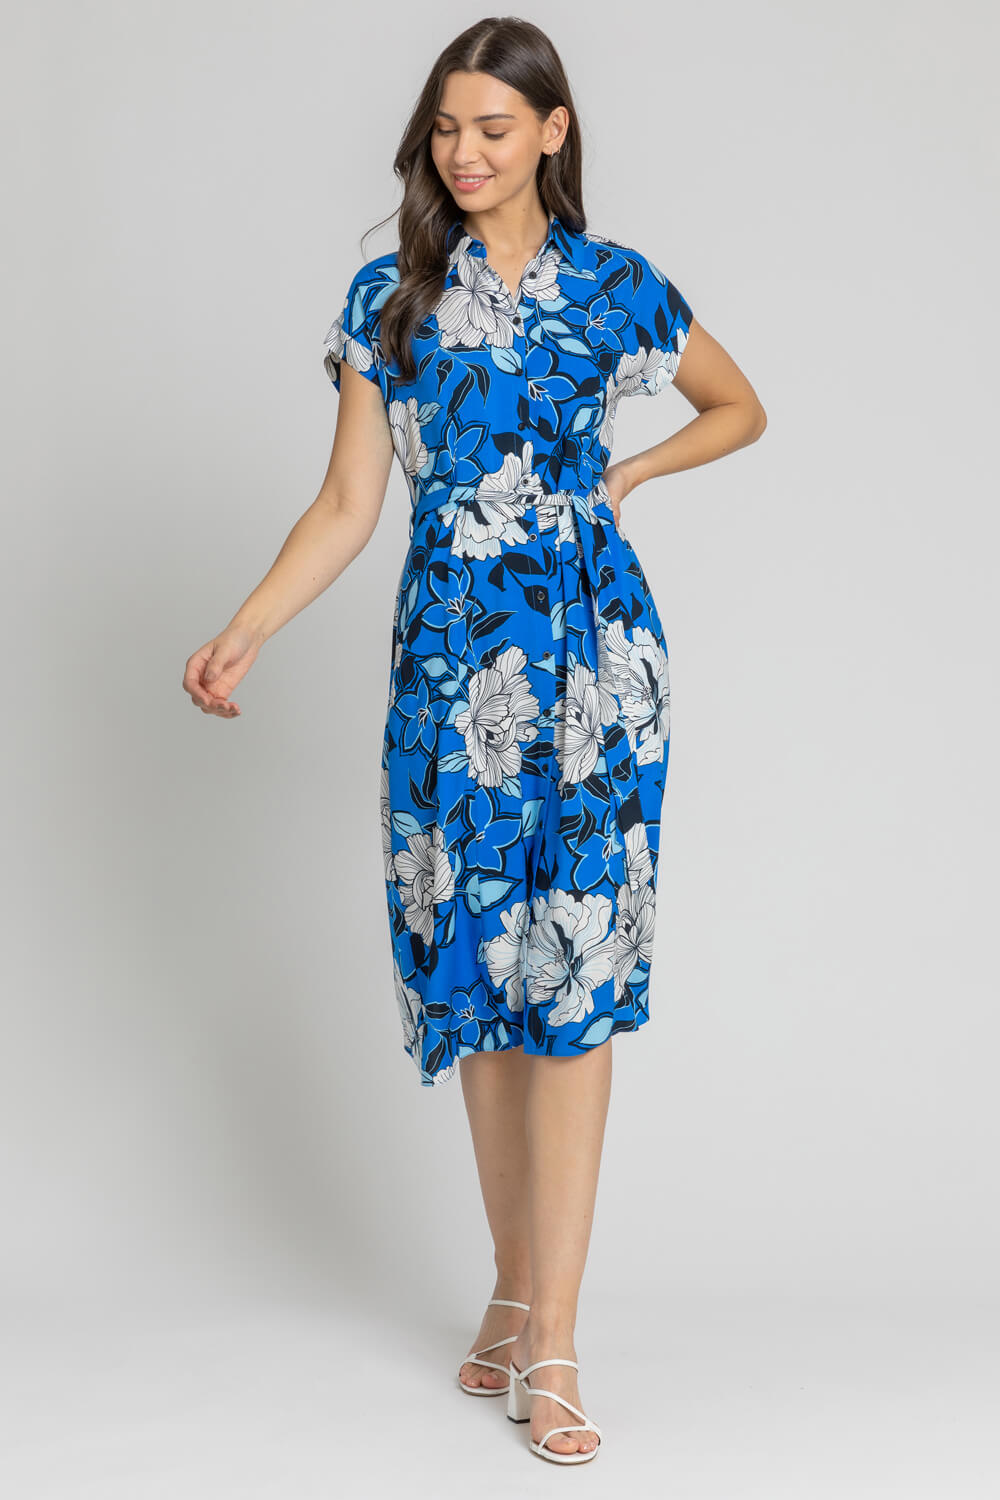 Blue Floral Print Belted Shirt Dress, Image 3 of 4